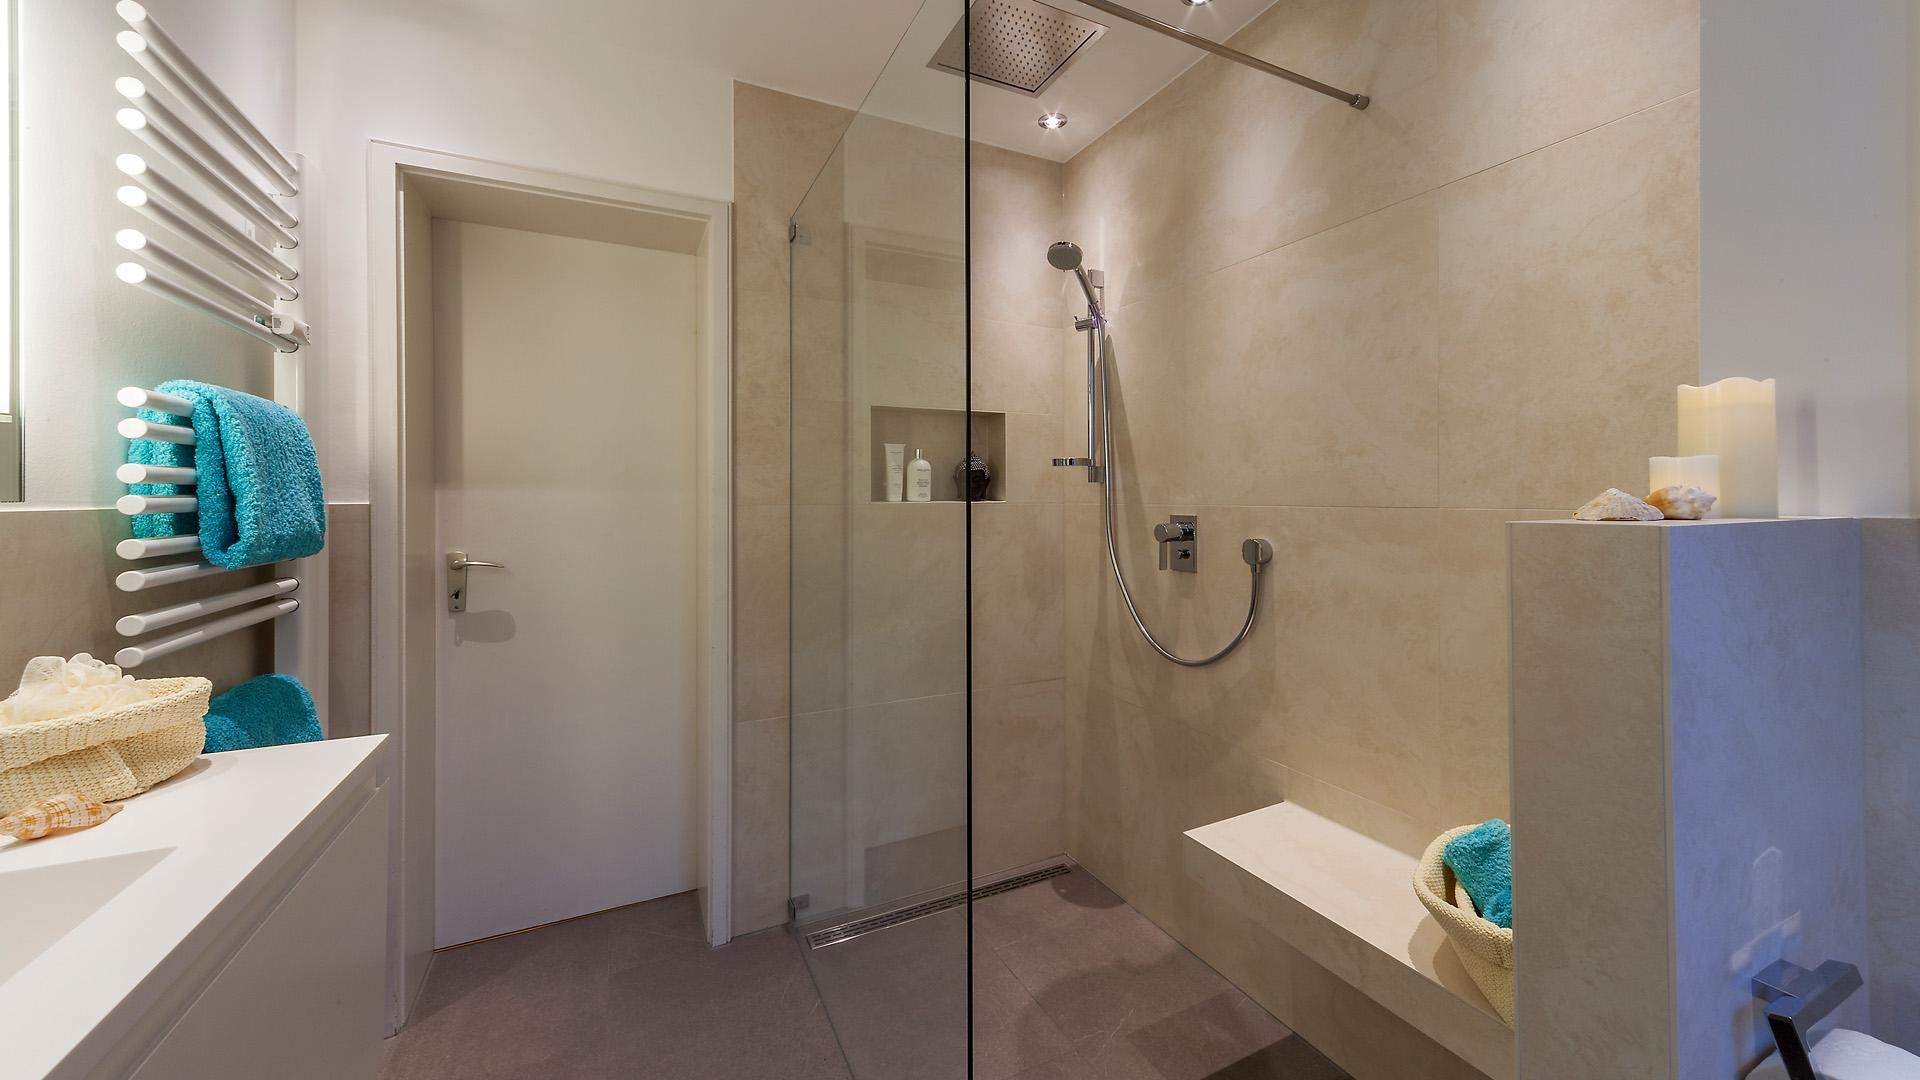 -Anzeige- #bestebadstudios #badezimmer #bad #dusche #badmöbel #modernesbadezimmer